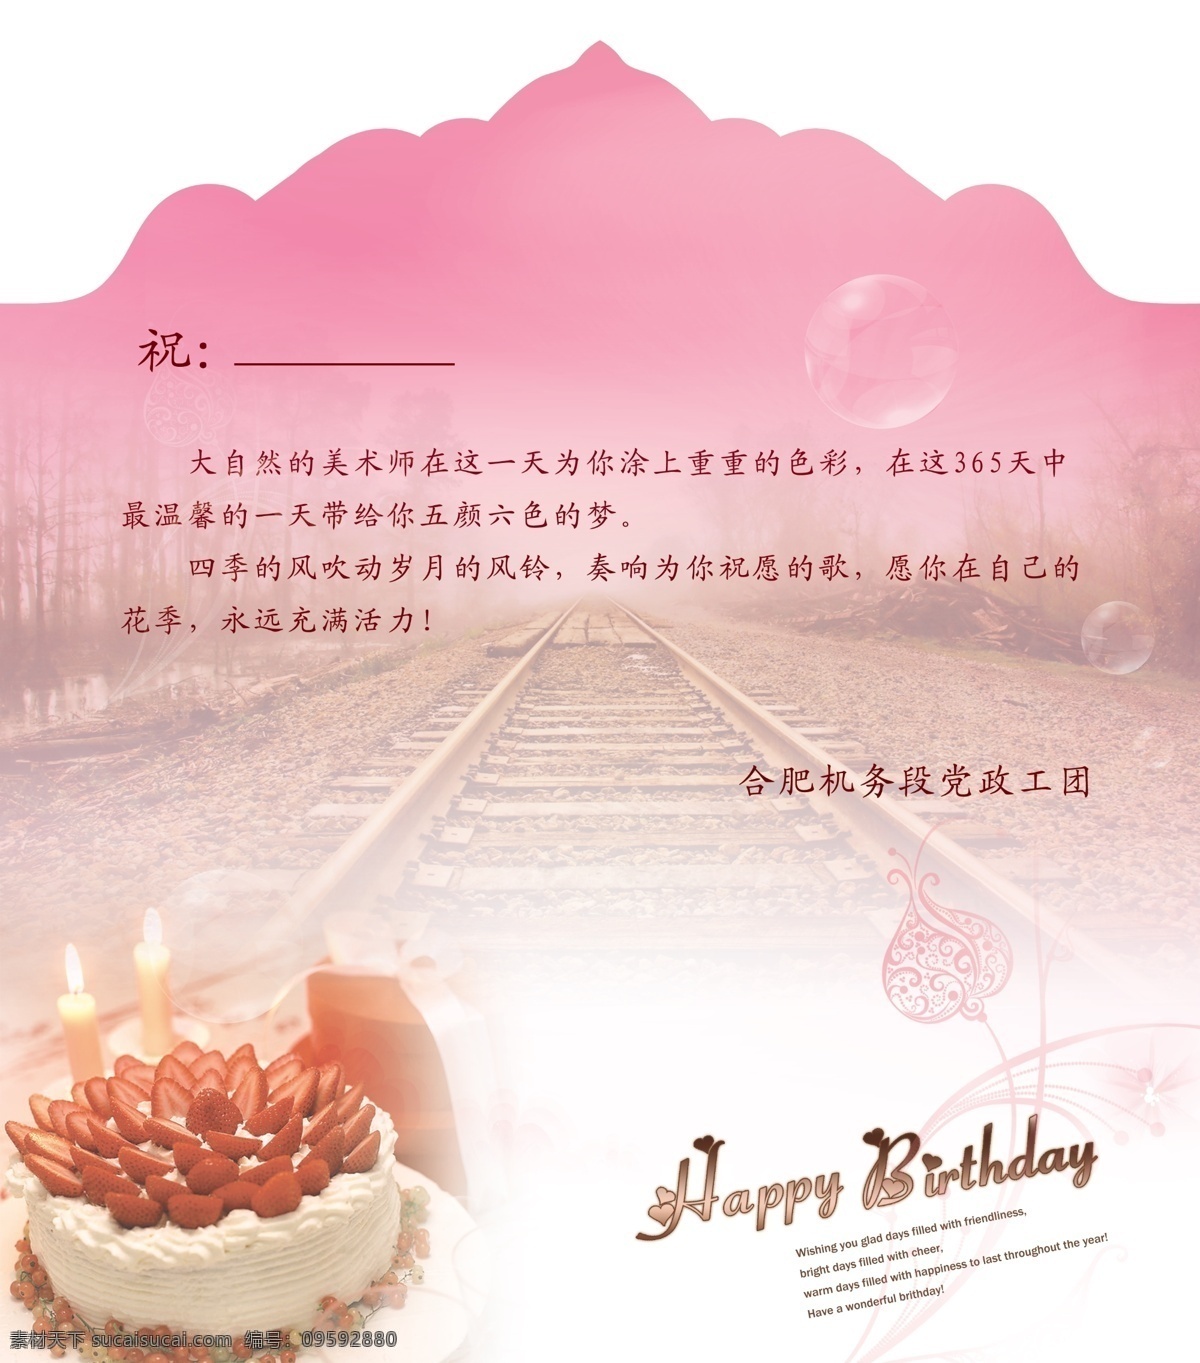 生日 快乐 草莓 蛋糕 粉色 风光 广告设计模板 蜡烛 名片卡片 生日快乐 铁路 源文件 psd源文件 餐饮素材